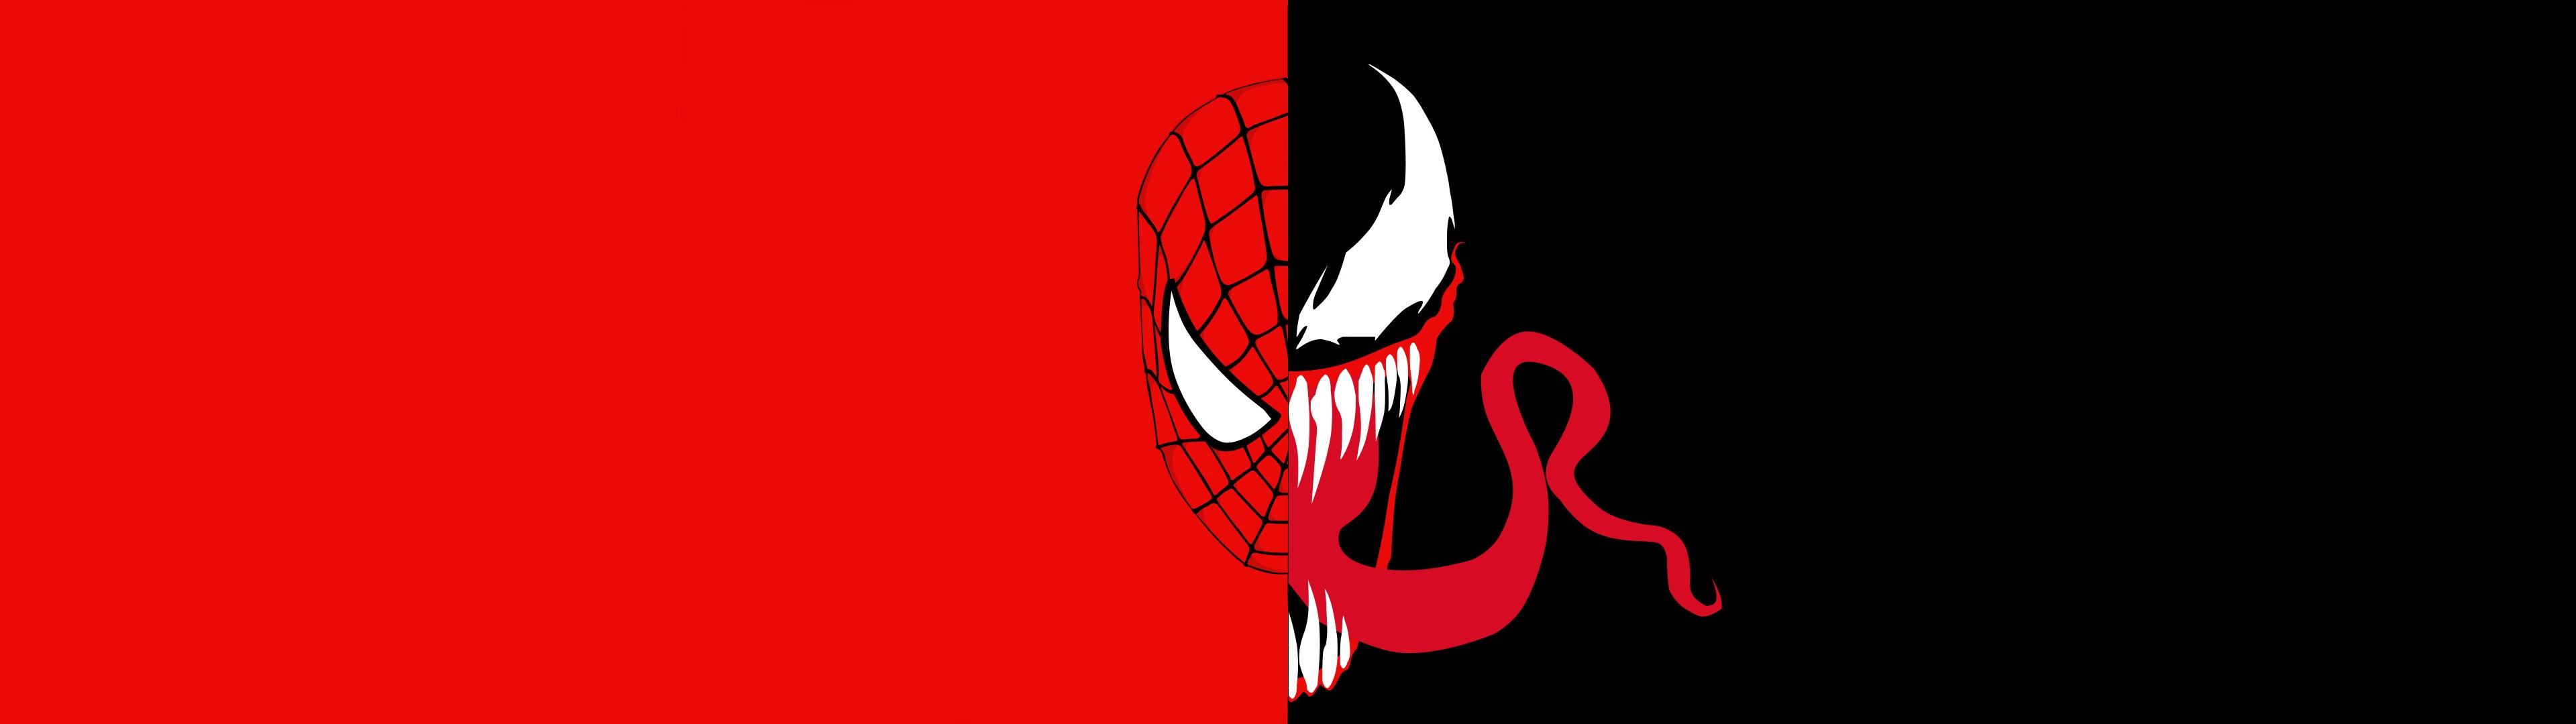 X 1080] [Request] Spider Man Vs Venom Dual Monitor Wallpaper